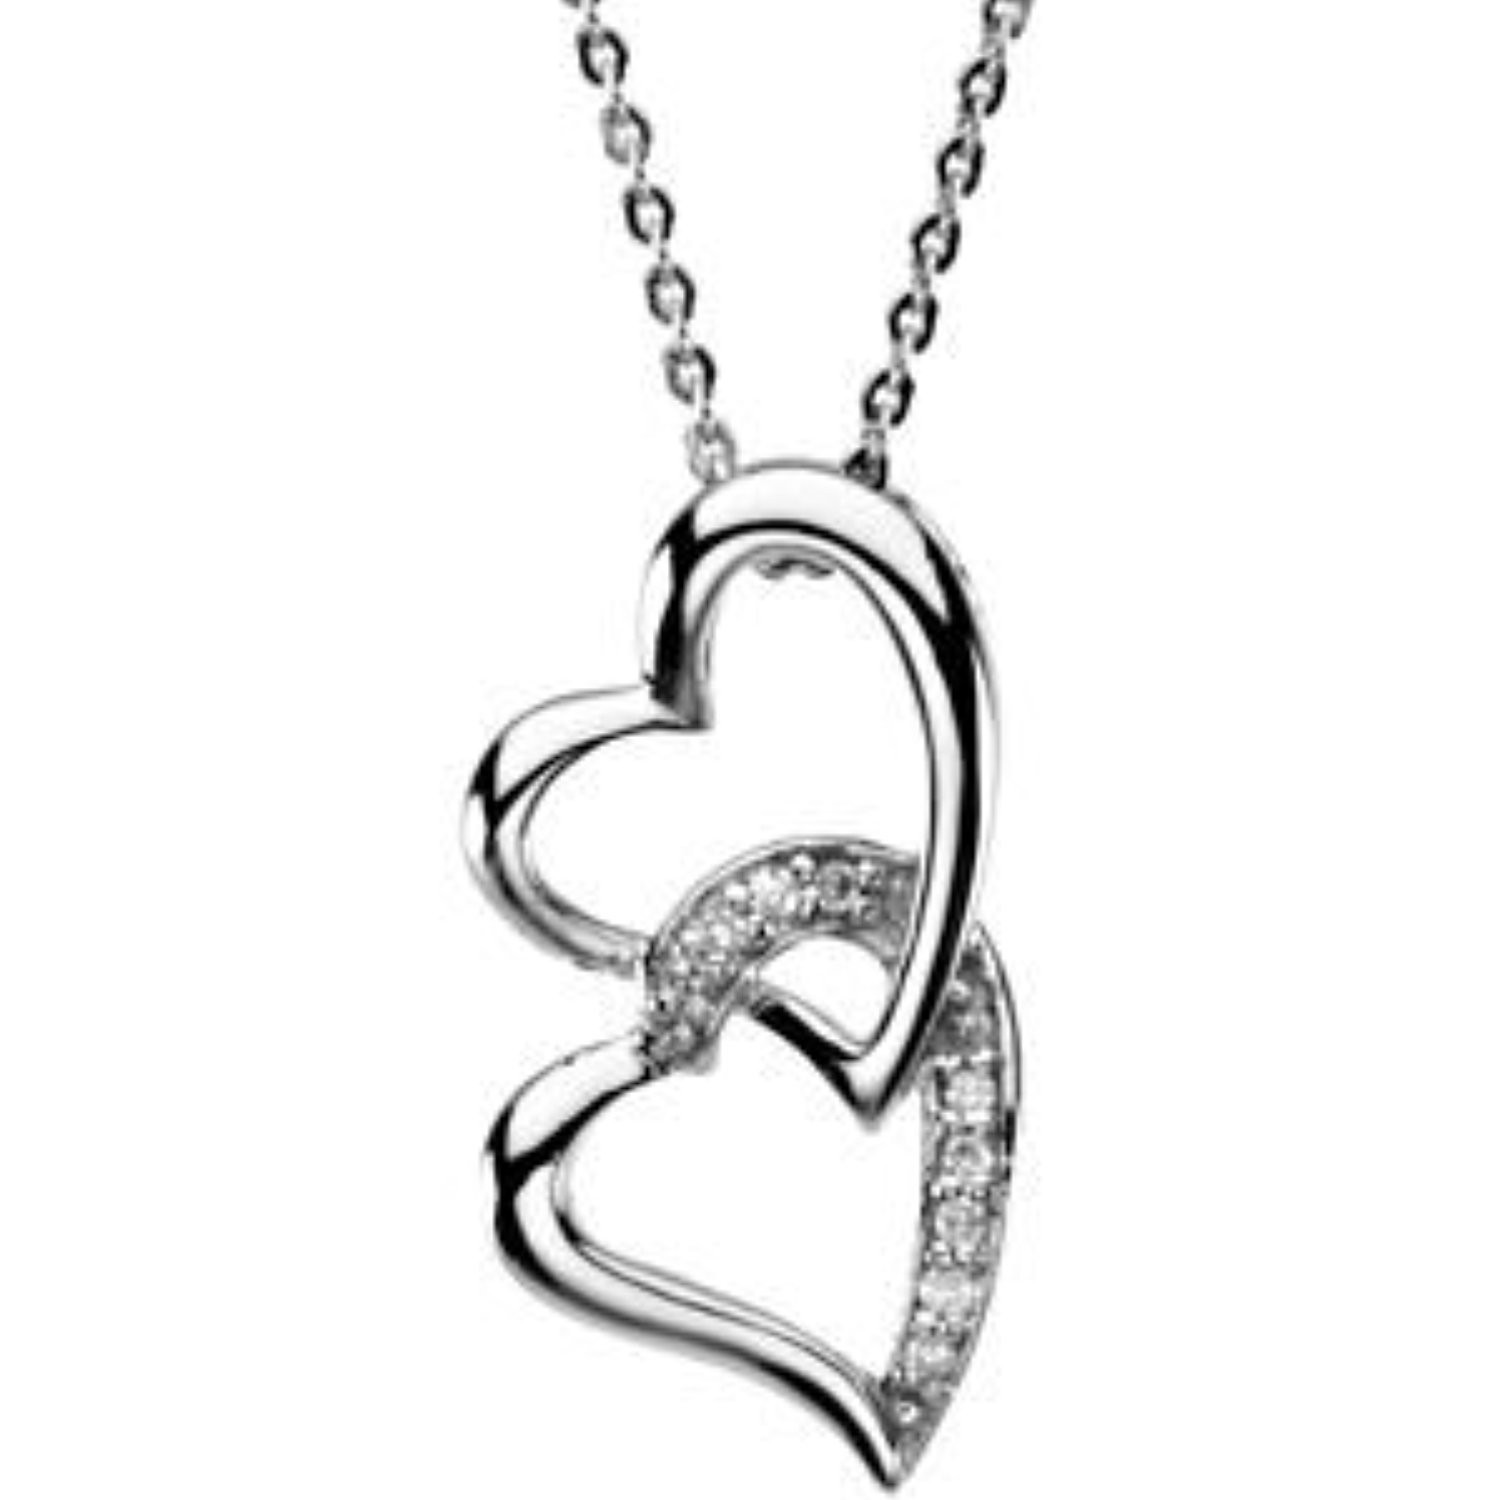 Walmart Heart Necklace
 Bedrock Jewelry Sisters by Heart Necklace Walmart